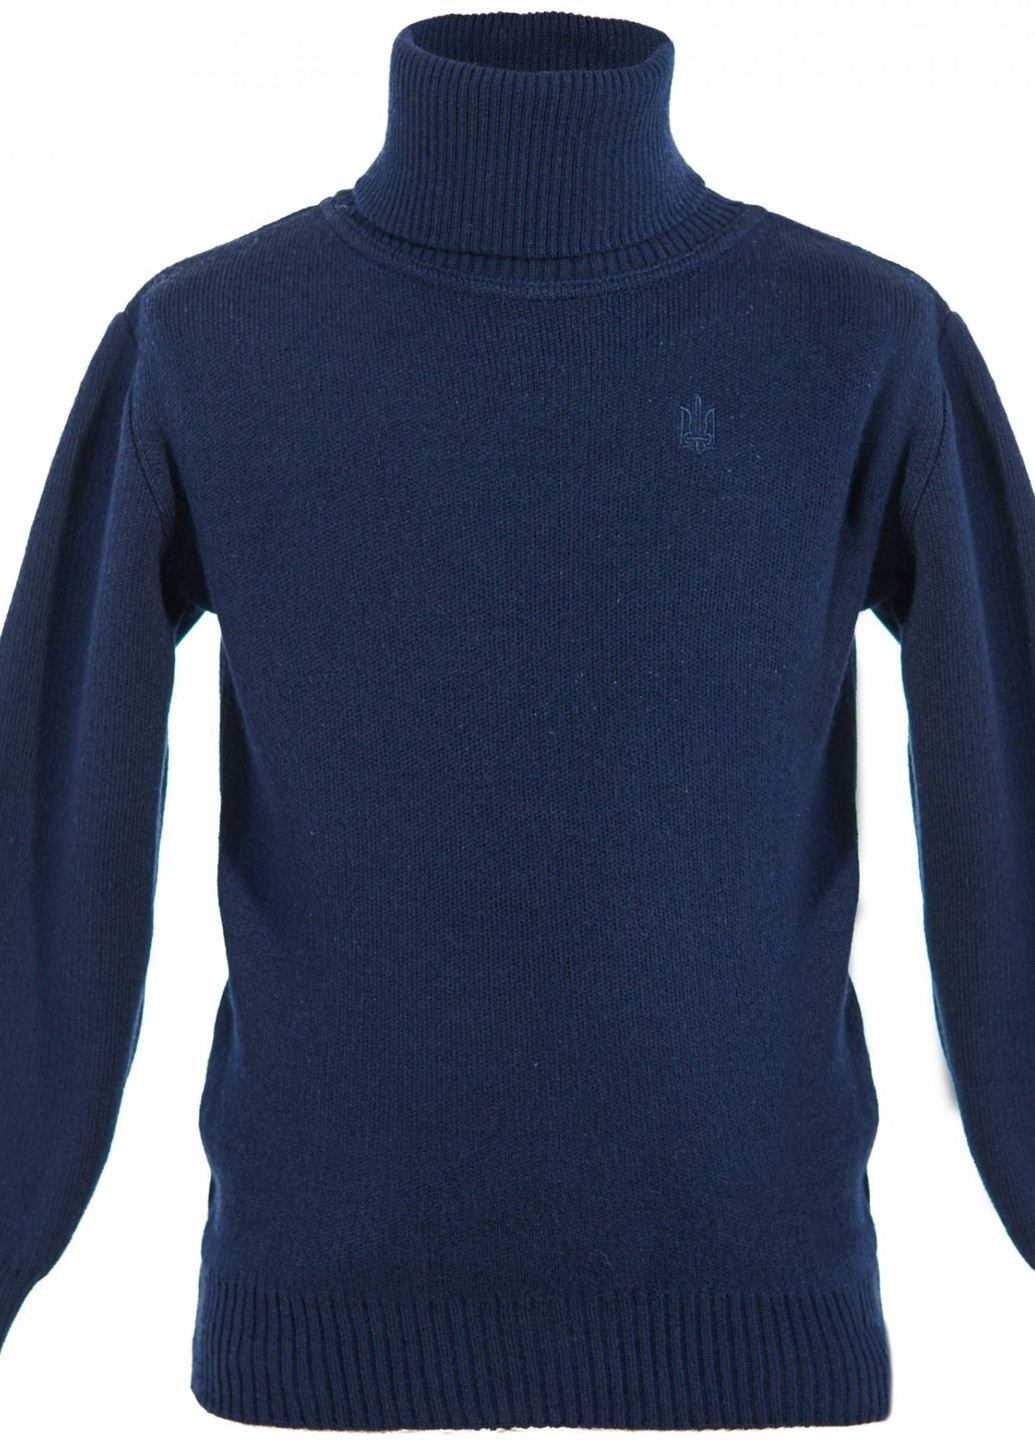 Синій светри светр з вишивкою тризубця (трезуб)17770-706 Lemanta